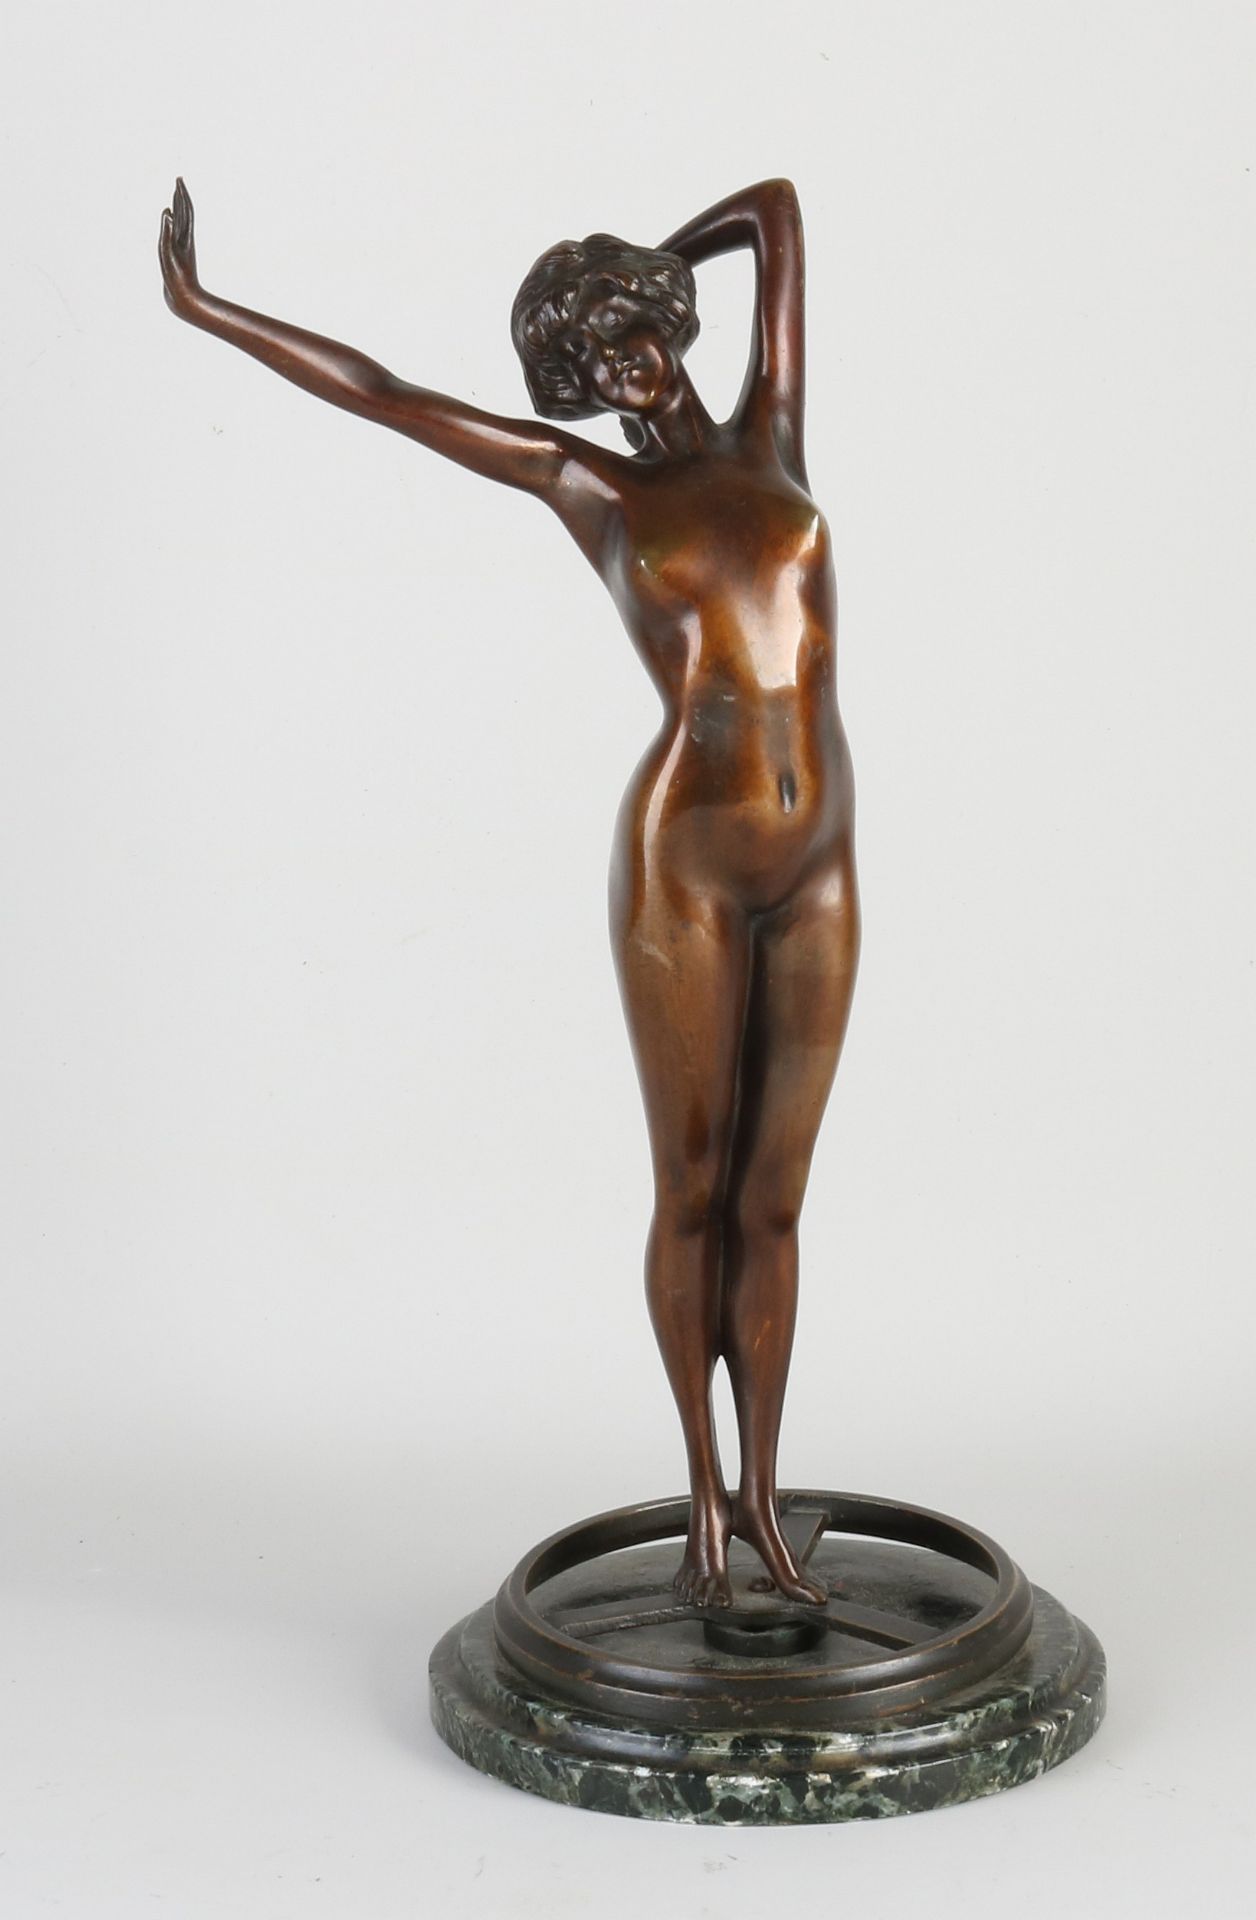 Antique bronze figure, 1910